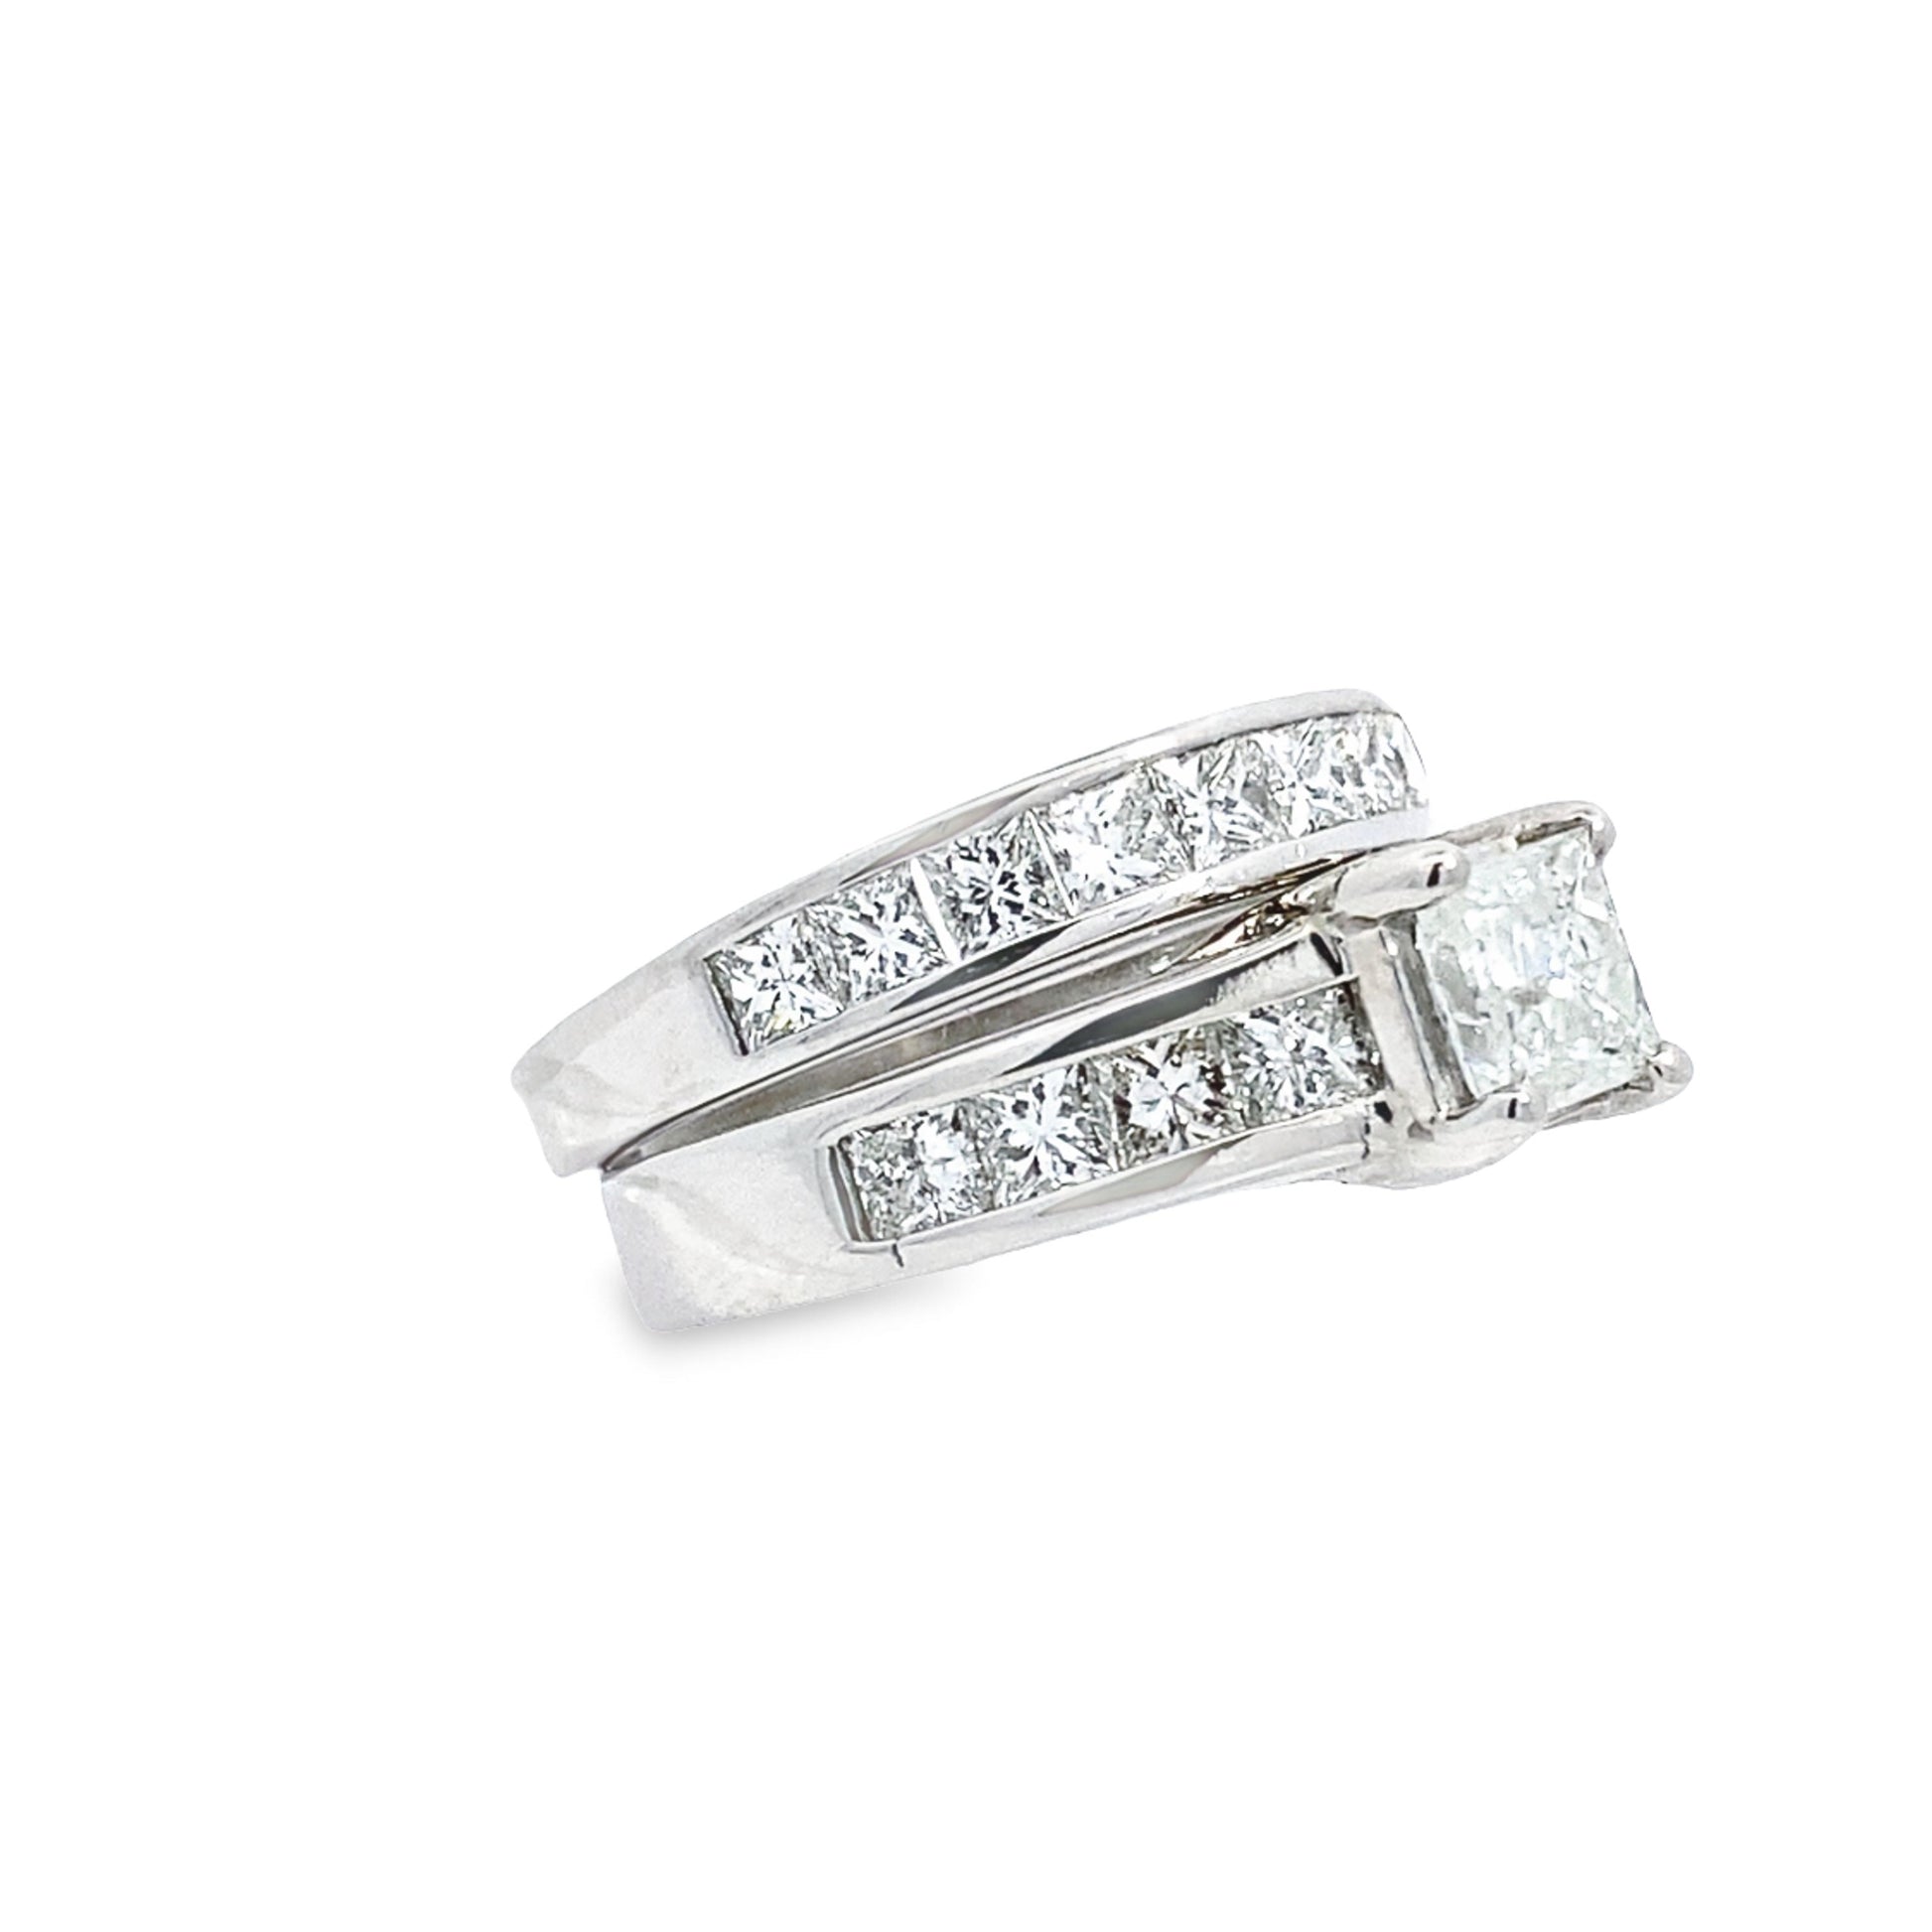 14K White Gold Princess Cut Diamond Bridal Set Size 8 6.6Dwt